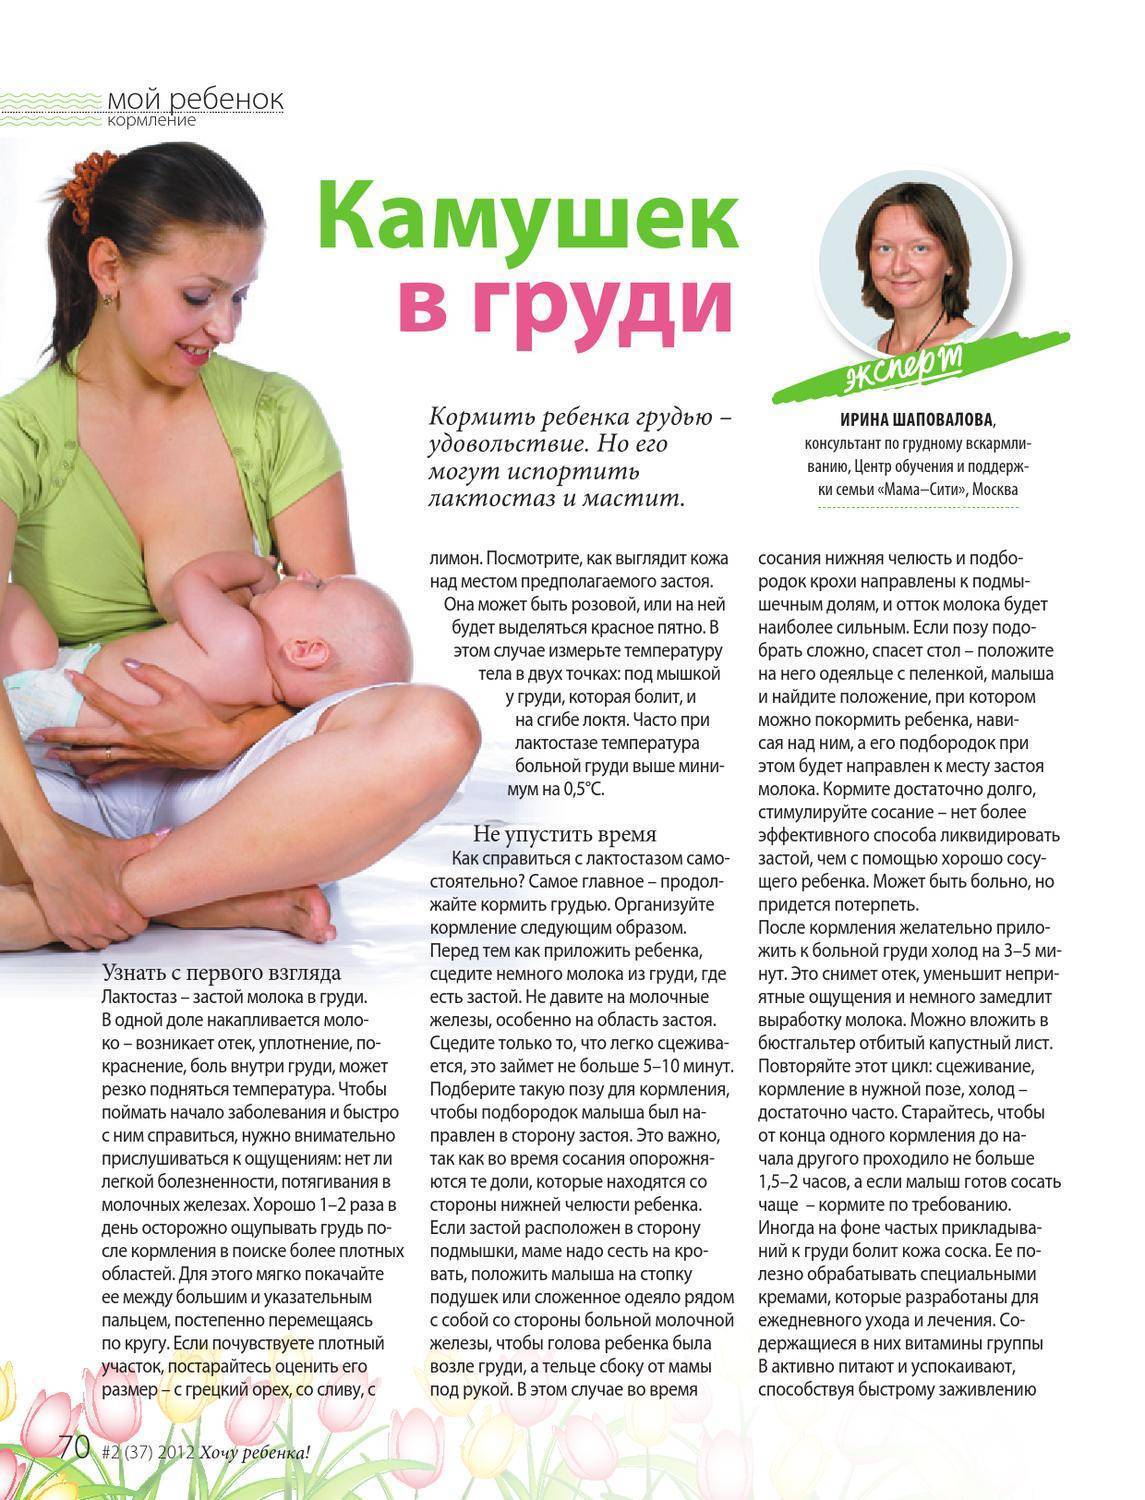 Жаропонижающее при грудном вскармливании: безопасные средства при гв, которые можно кормящей маме при кормлении ребенка